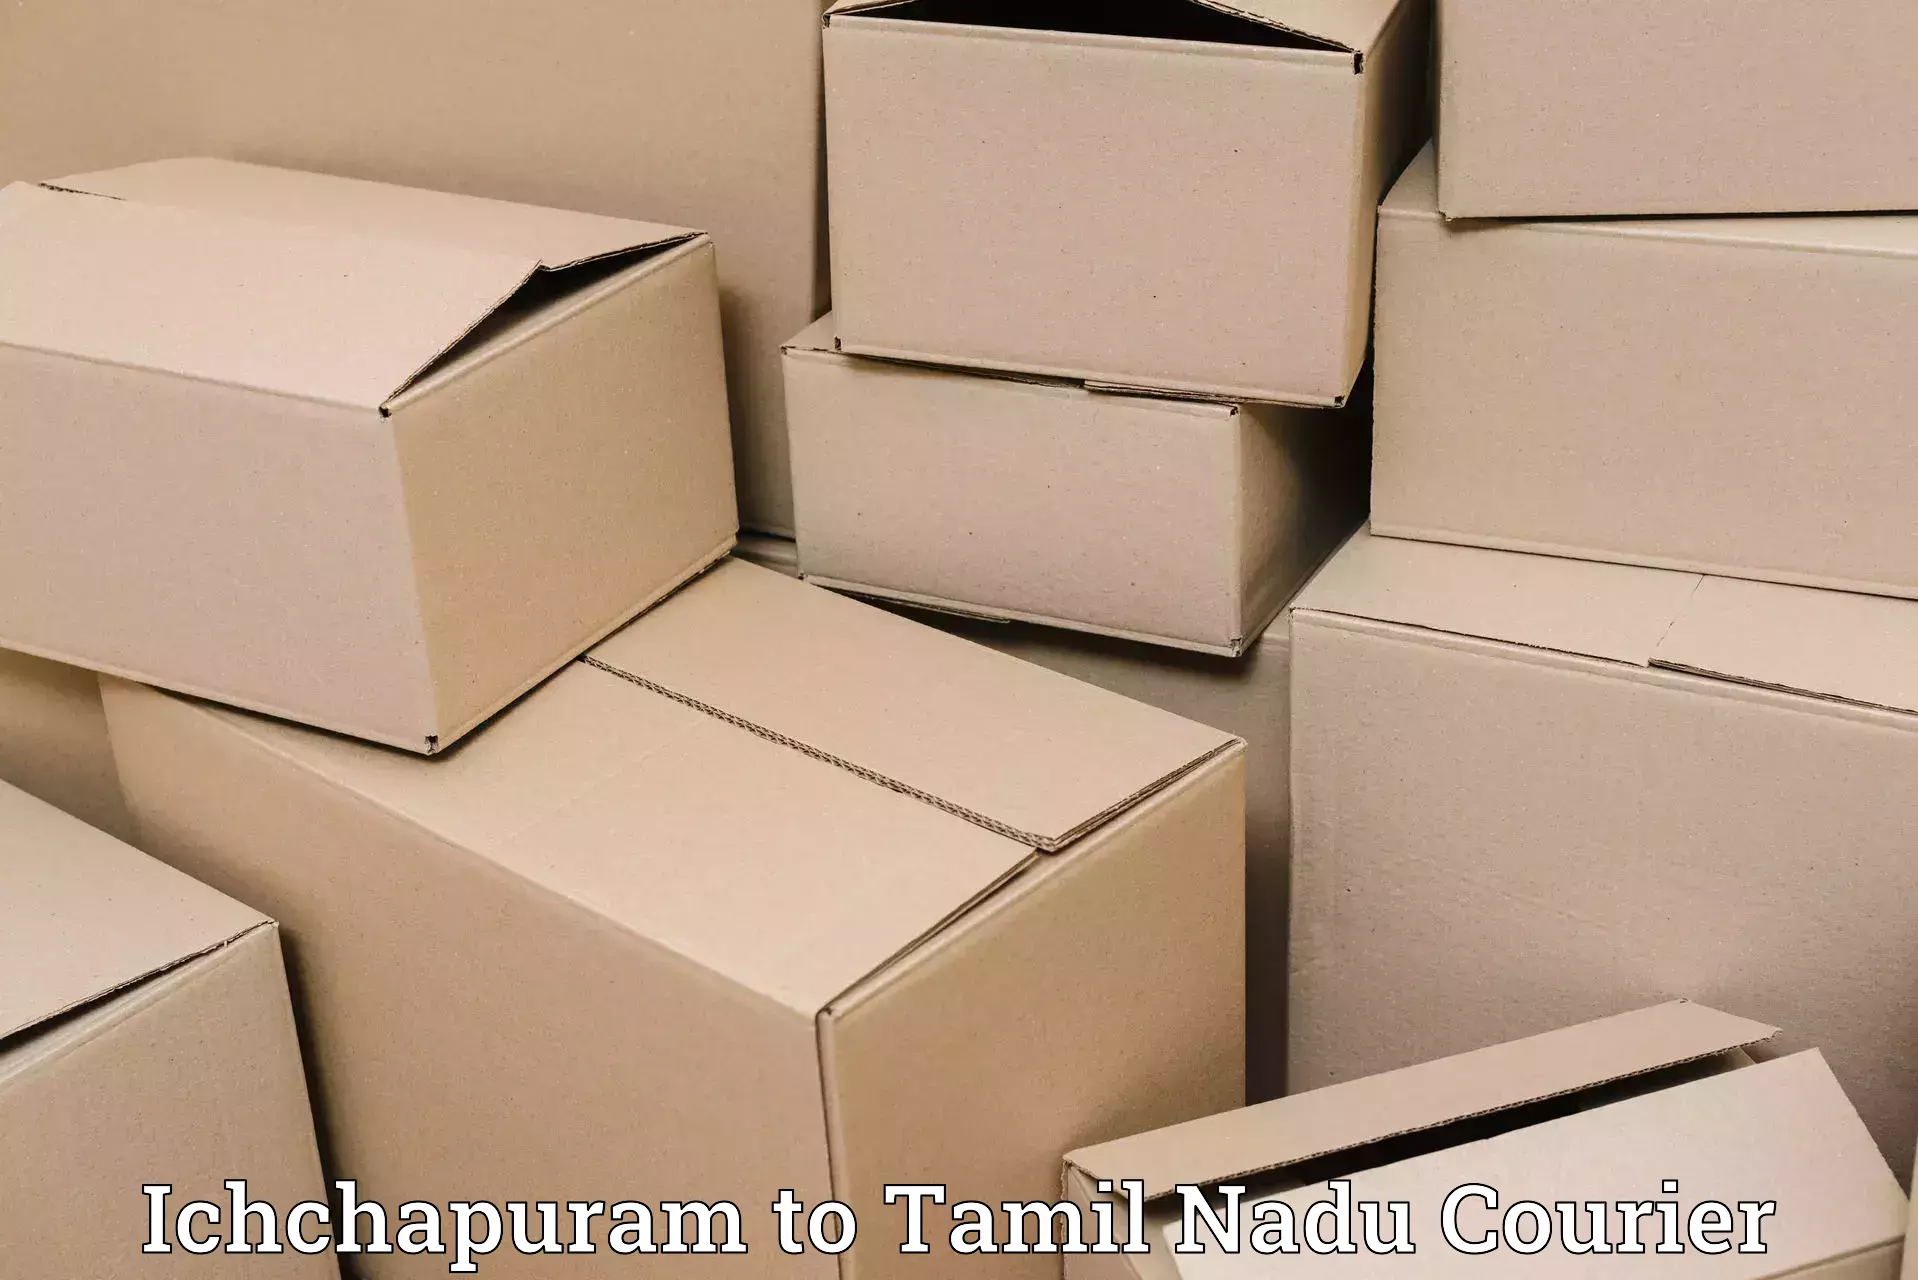 Speedy delivery service Ichchapuram to Sattur